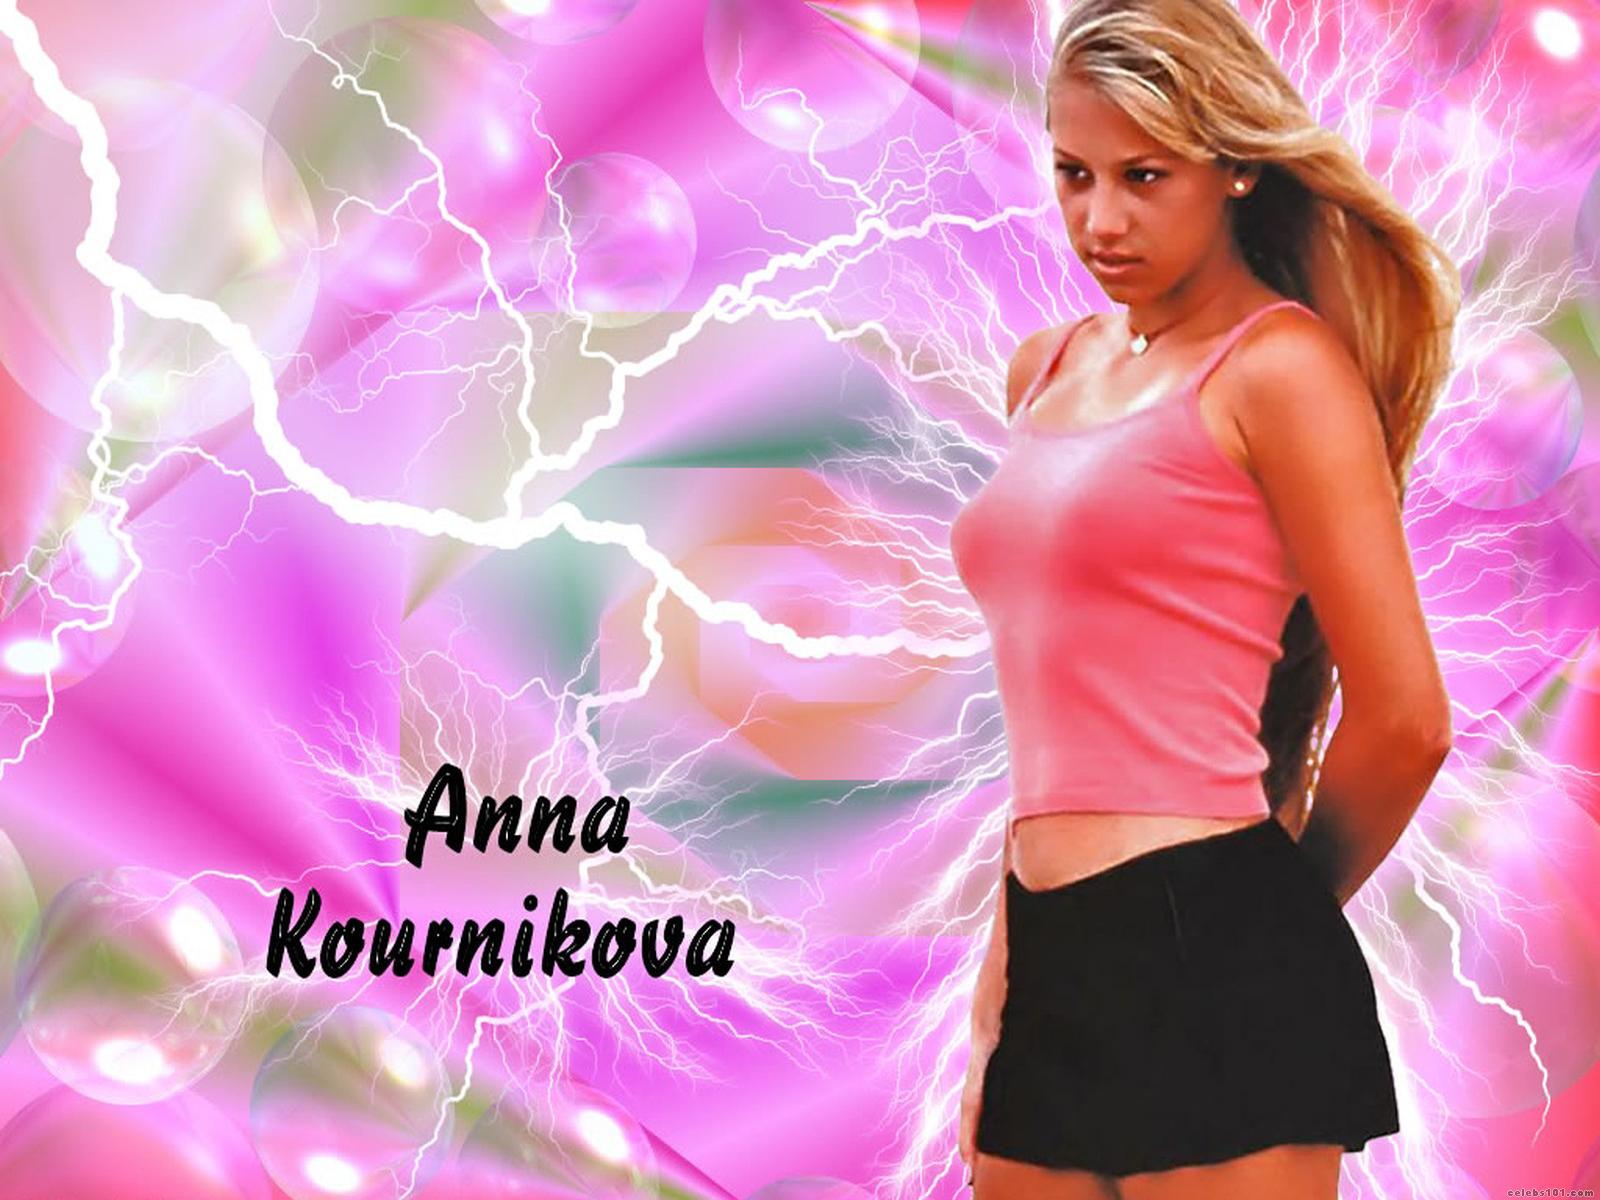 Anna Kournikova High Quality Wallpaper Size Of